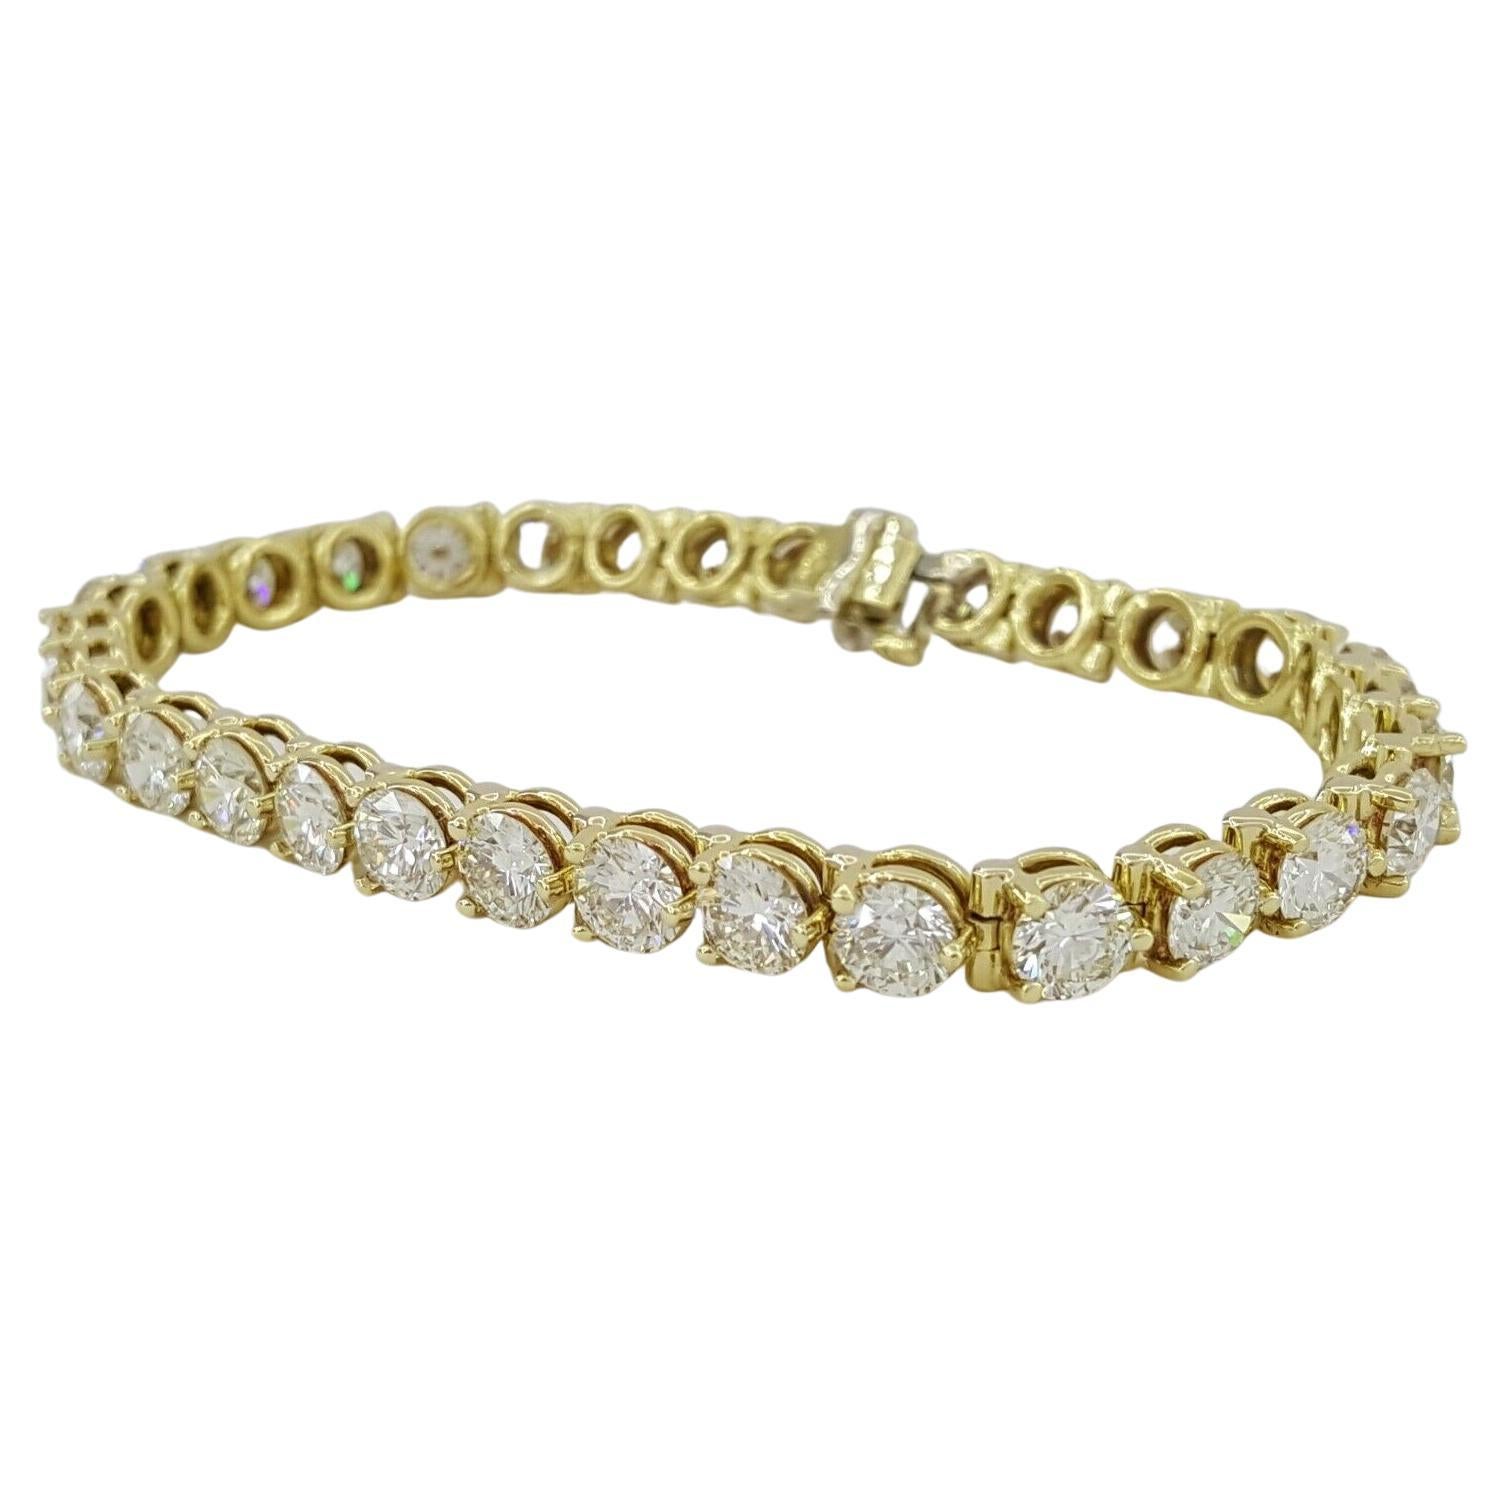 Bracelet tennis en or jaune 18 carats avec diamants taille brillant rond de 13,18 carats au total